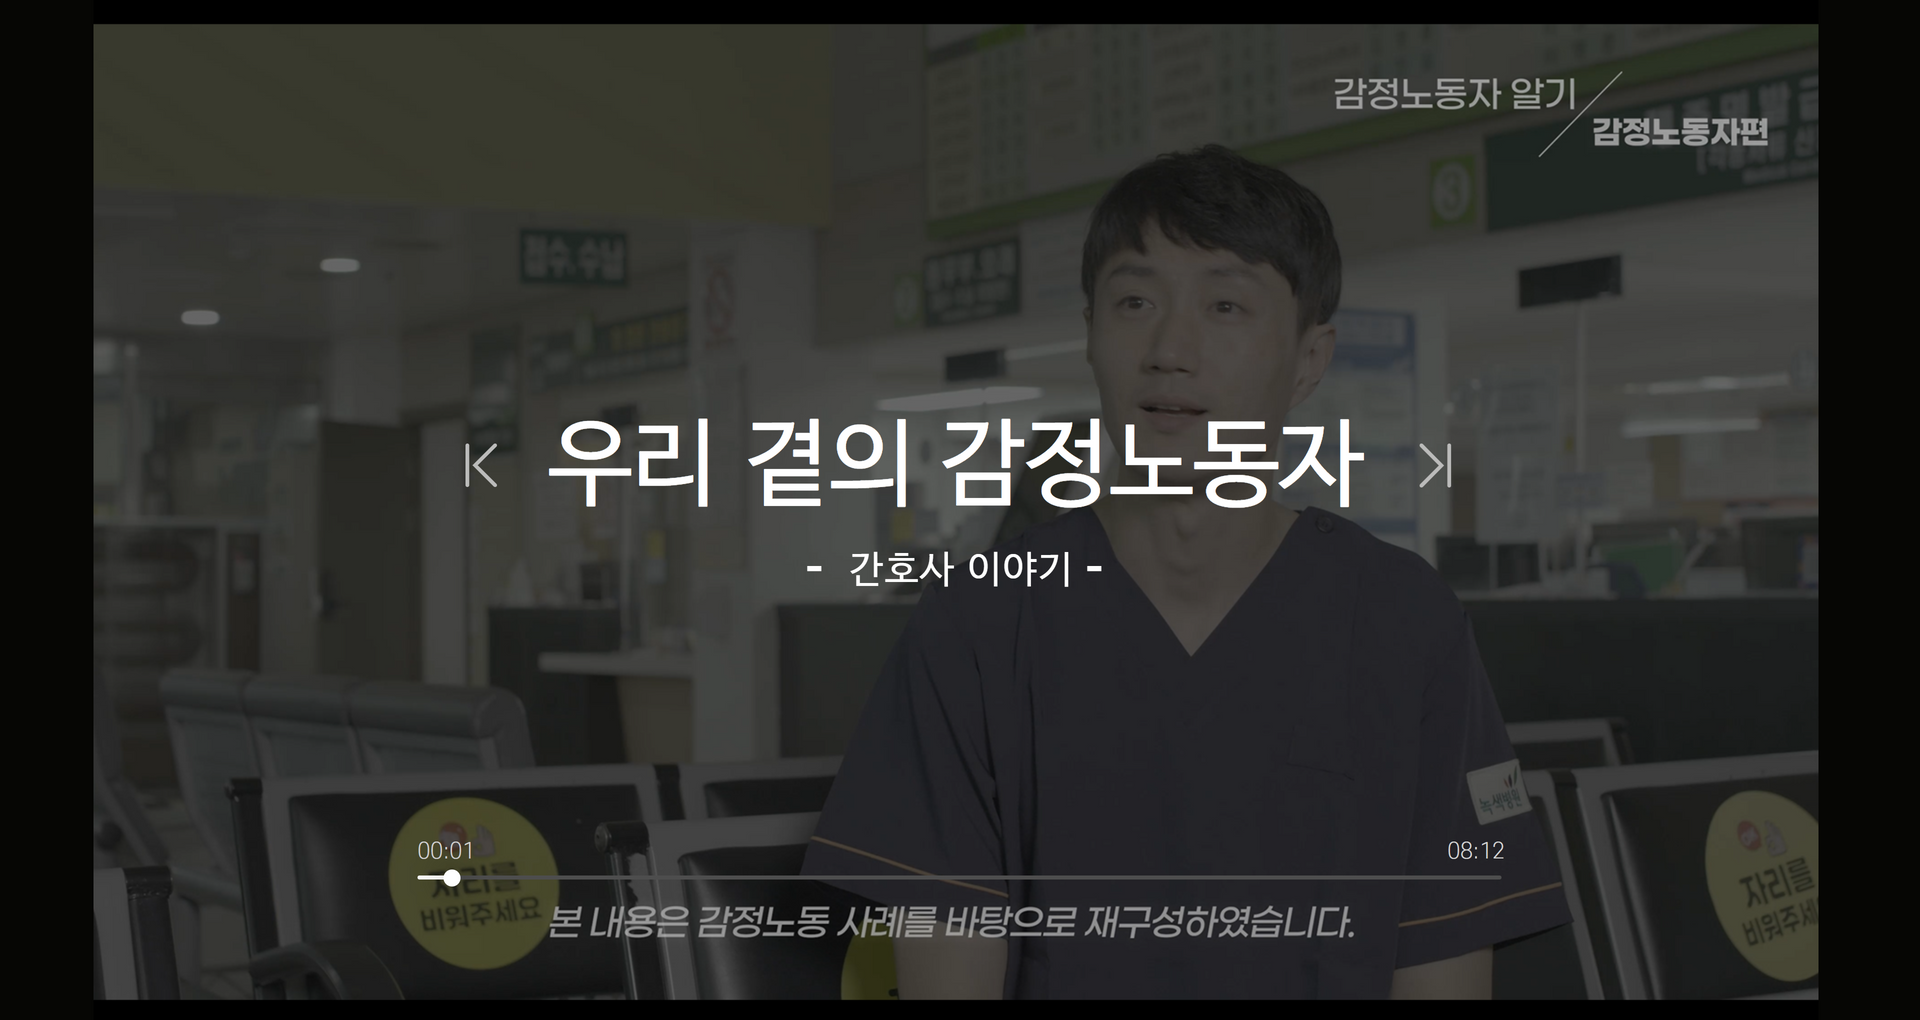 [감정노동 알기] 우리 곁의 감정노동자 - 간호사 이야기 (공개)